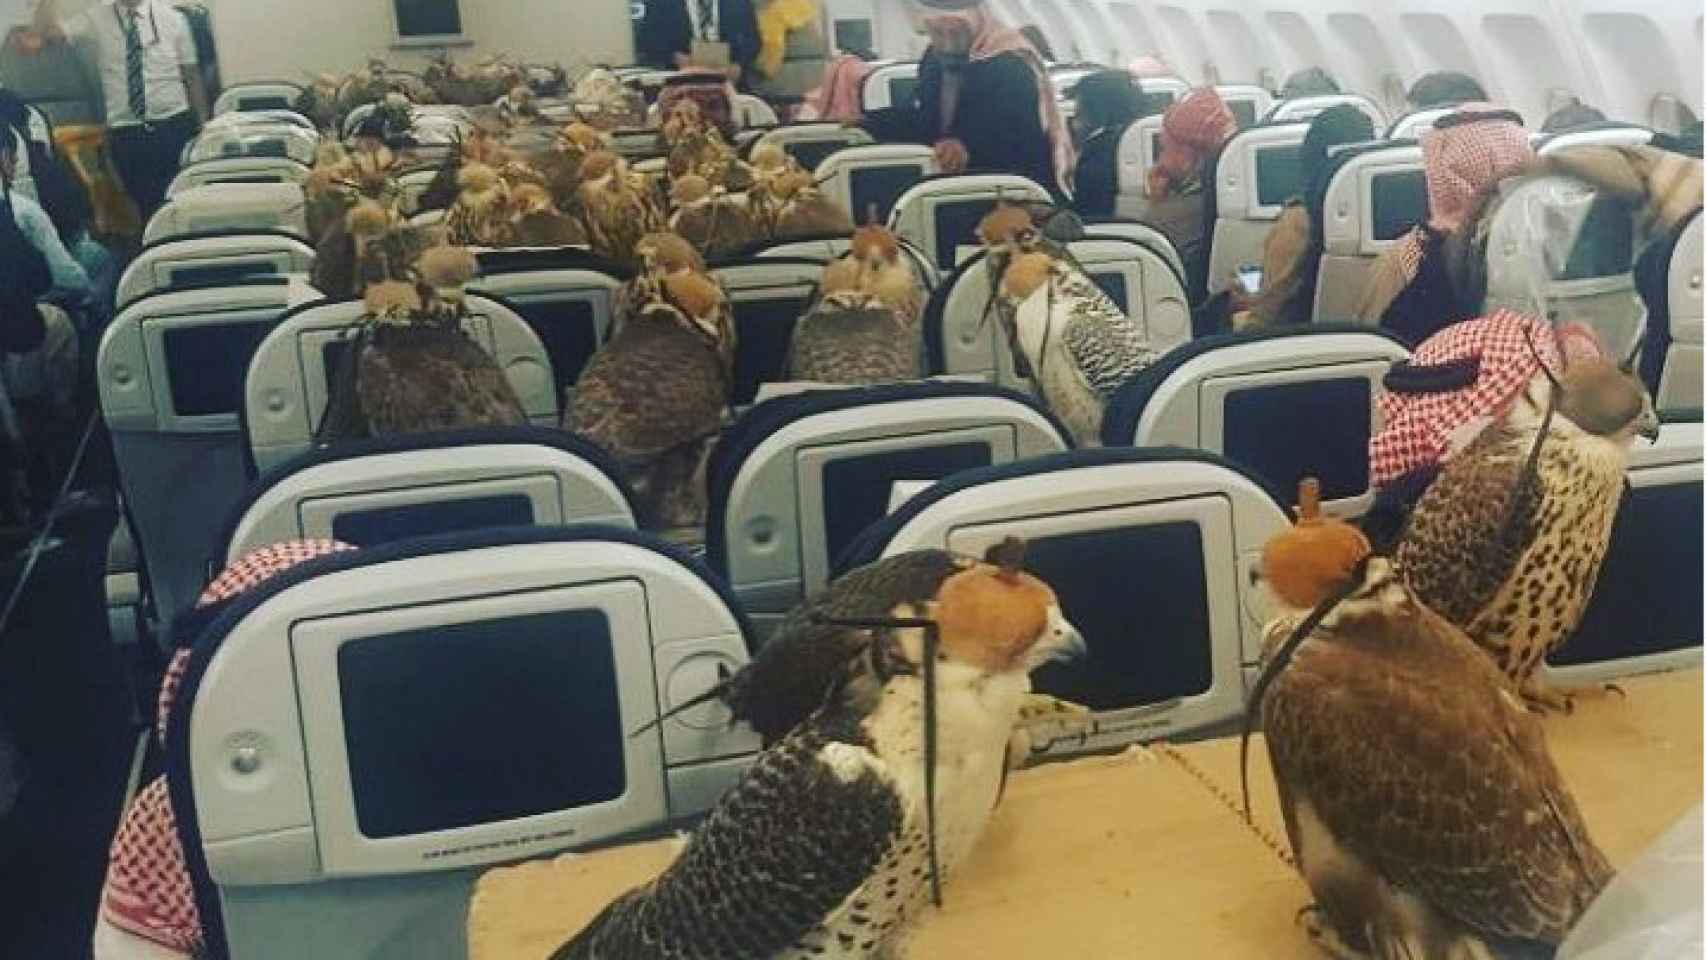 Imagen de los 80 halcones sentados en primera clase de un avión